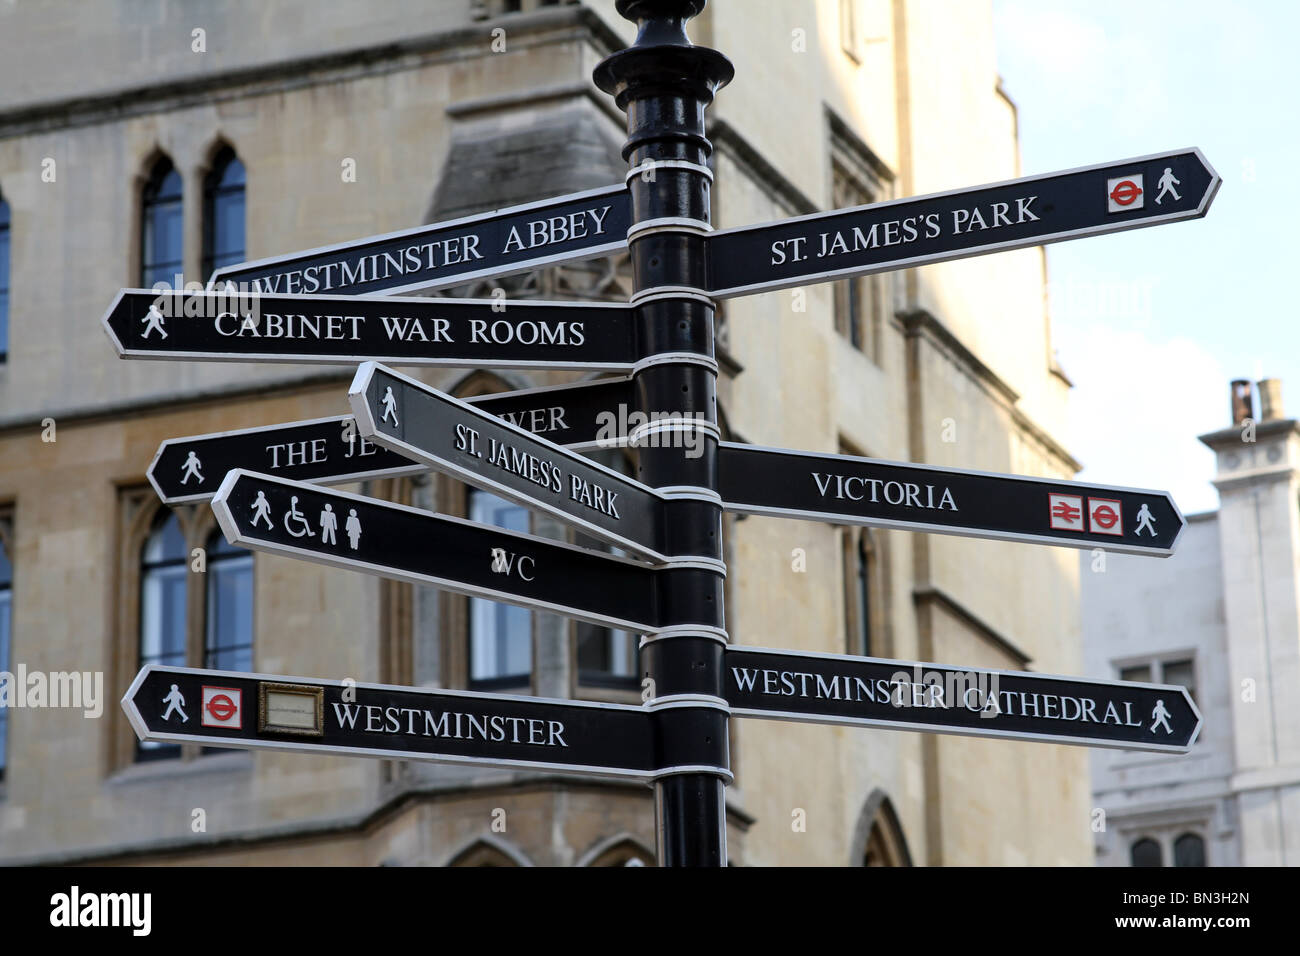 Attraction touristique de Londres avec panneau panneaux indicateurs dans Londres, Angleterre Banque D'Images